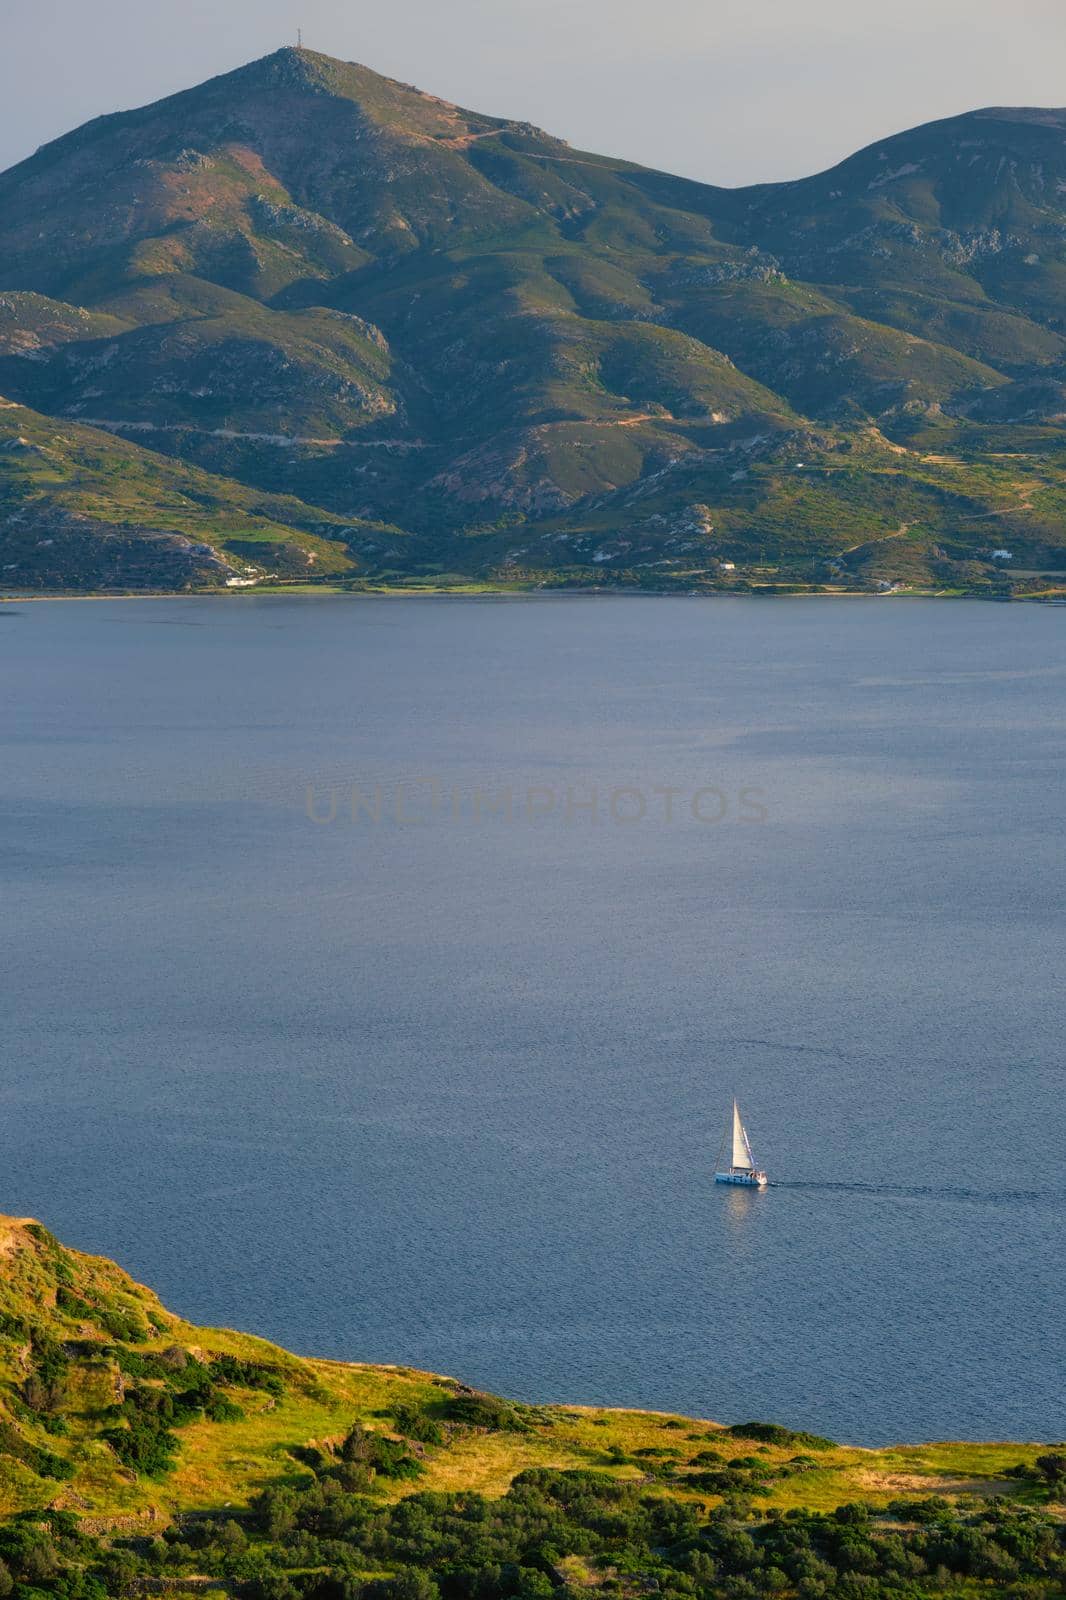 Yacht in Aegean sea near Milos island. Milos island, Greece by dimol